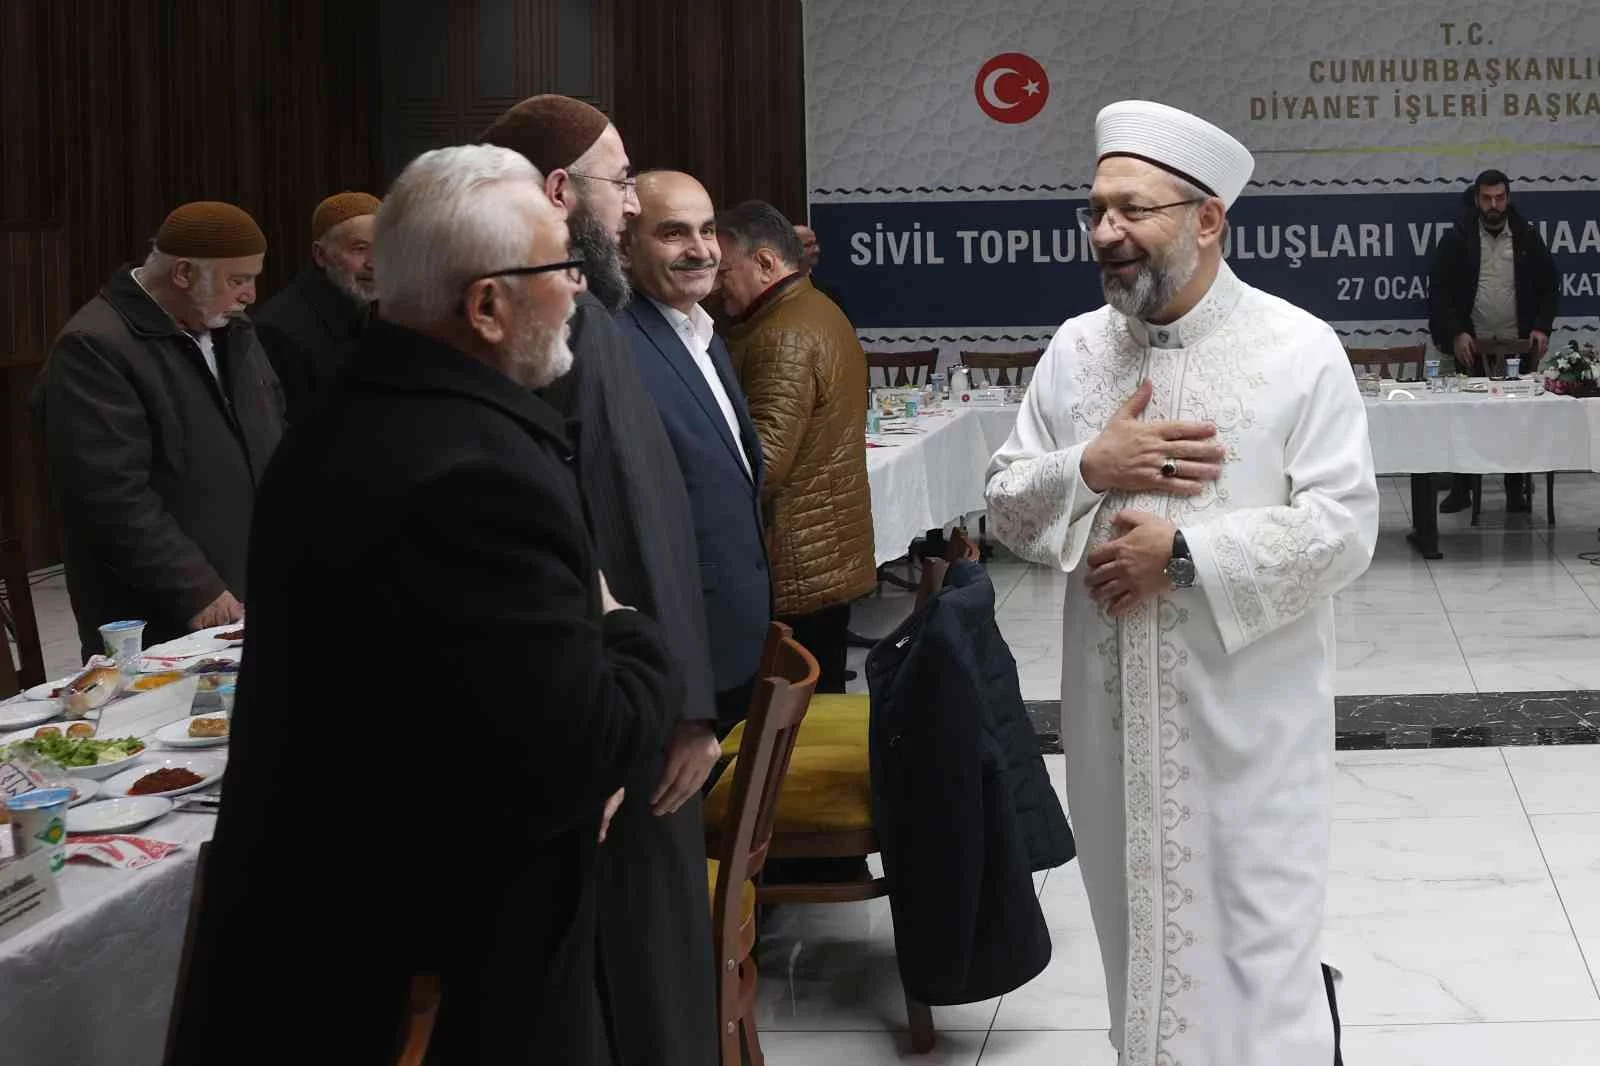 Diyanet İşleri Başkanı Erbaş: “İslam, toplumsal dengenin ilacıdır”